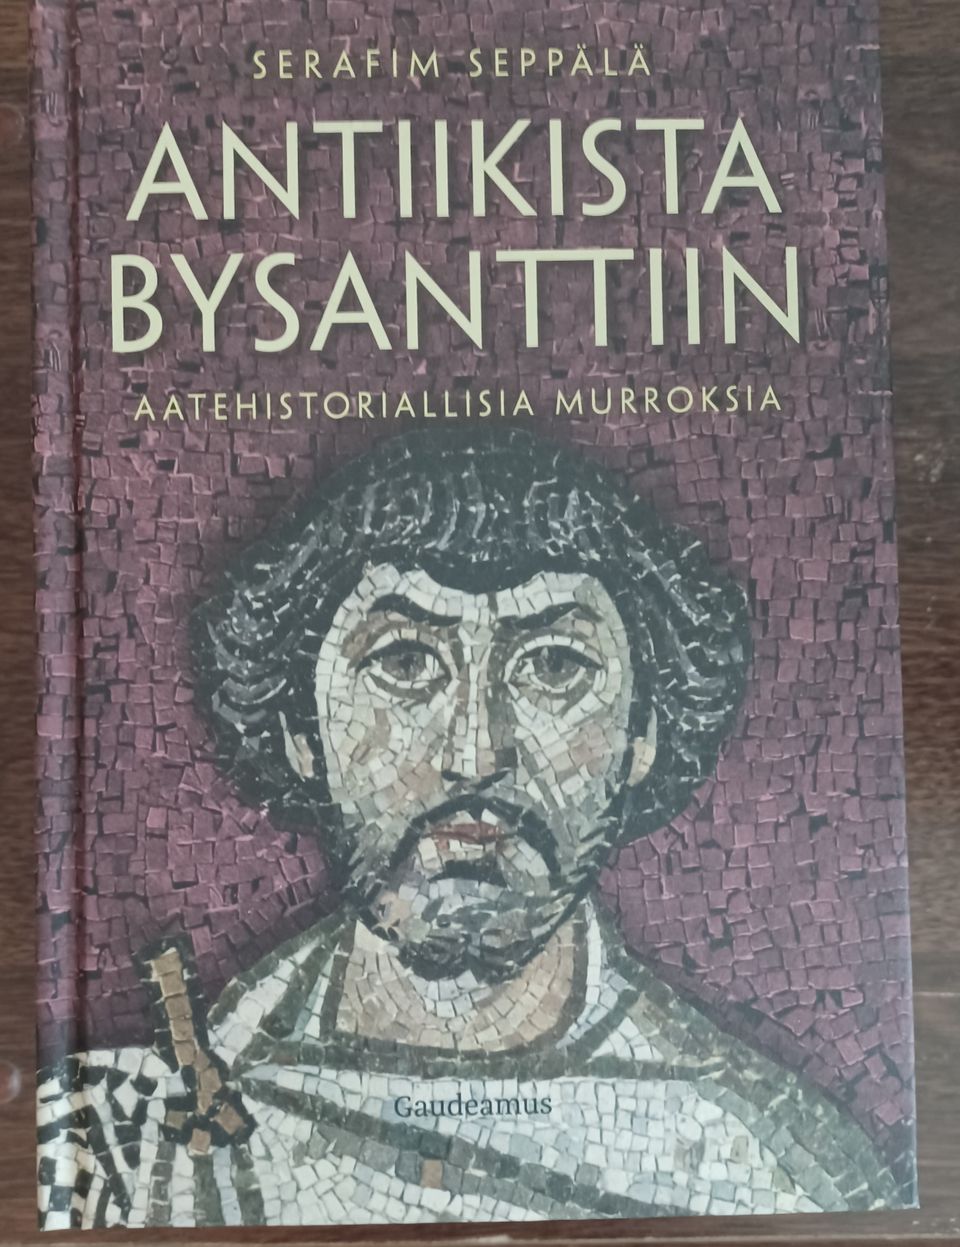 Antiikista Bysanttiin